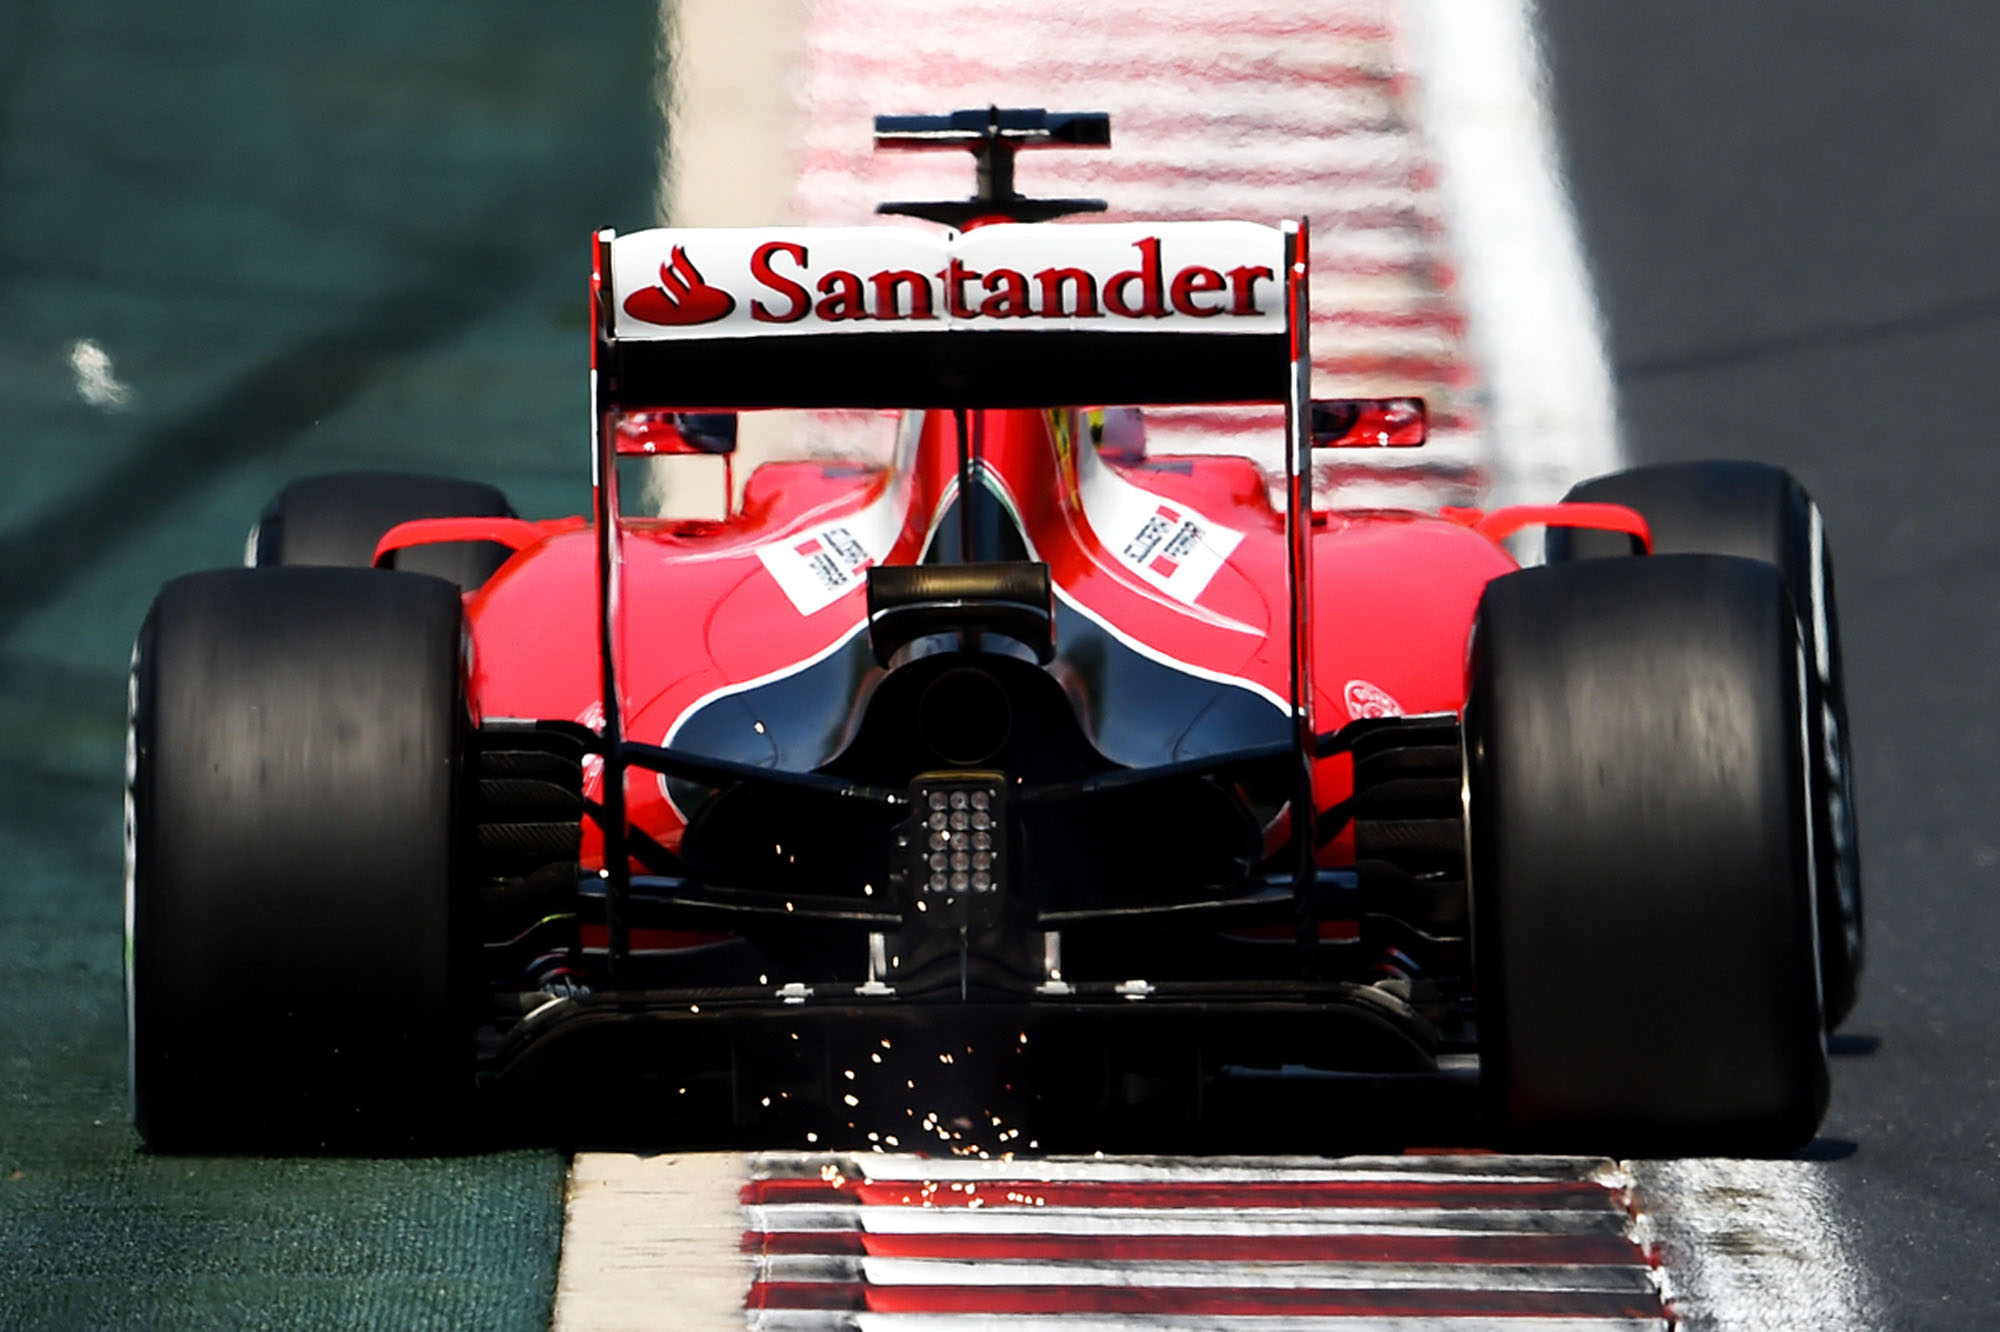 Santander, F1 and Scuderia Ferrari allies in the green transition